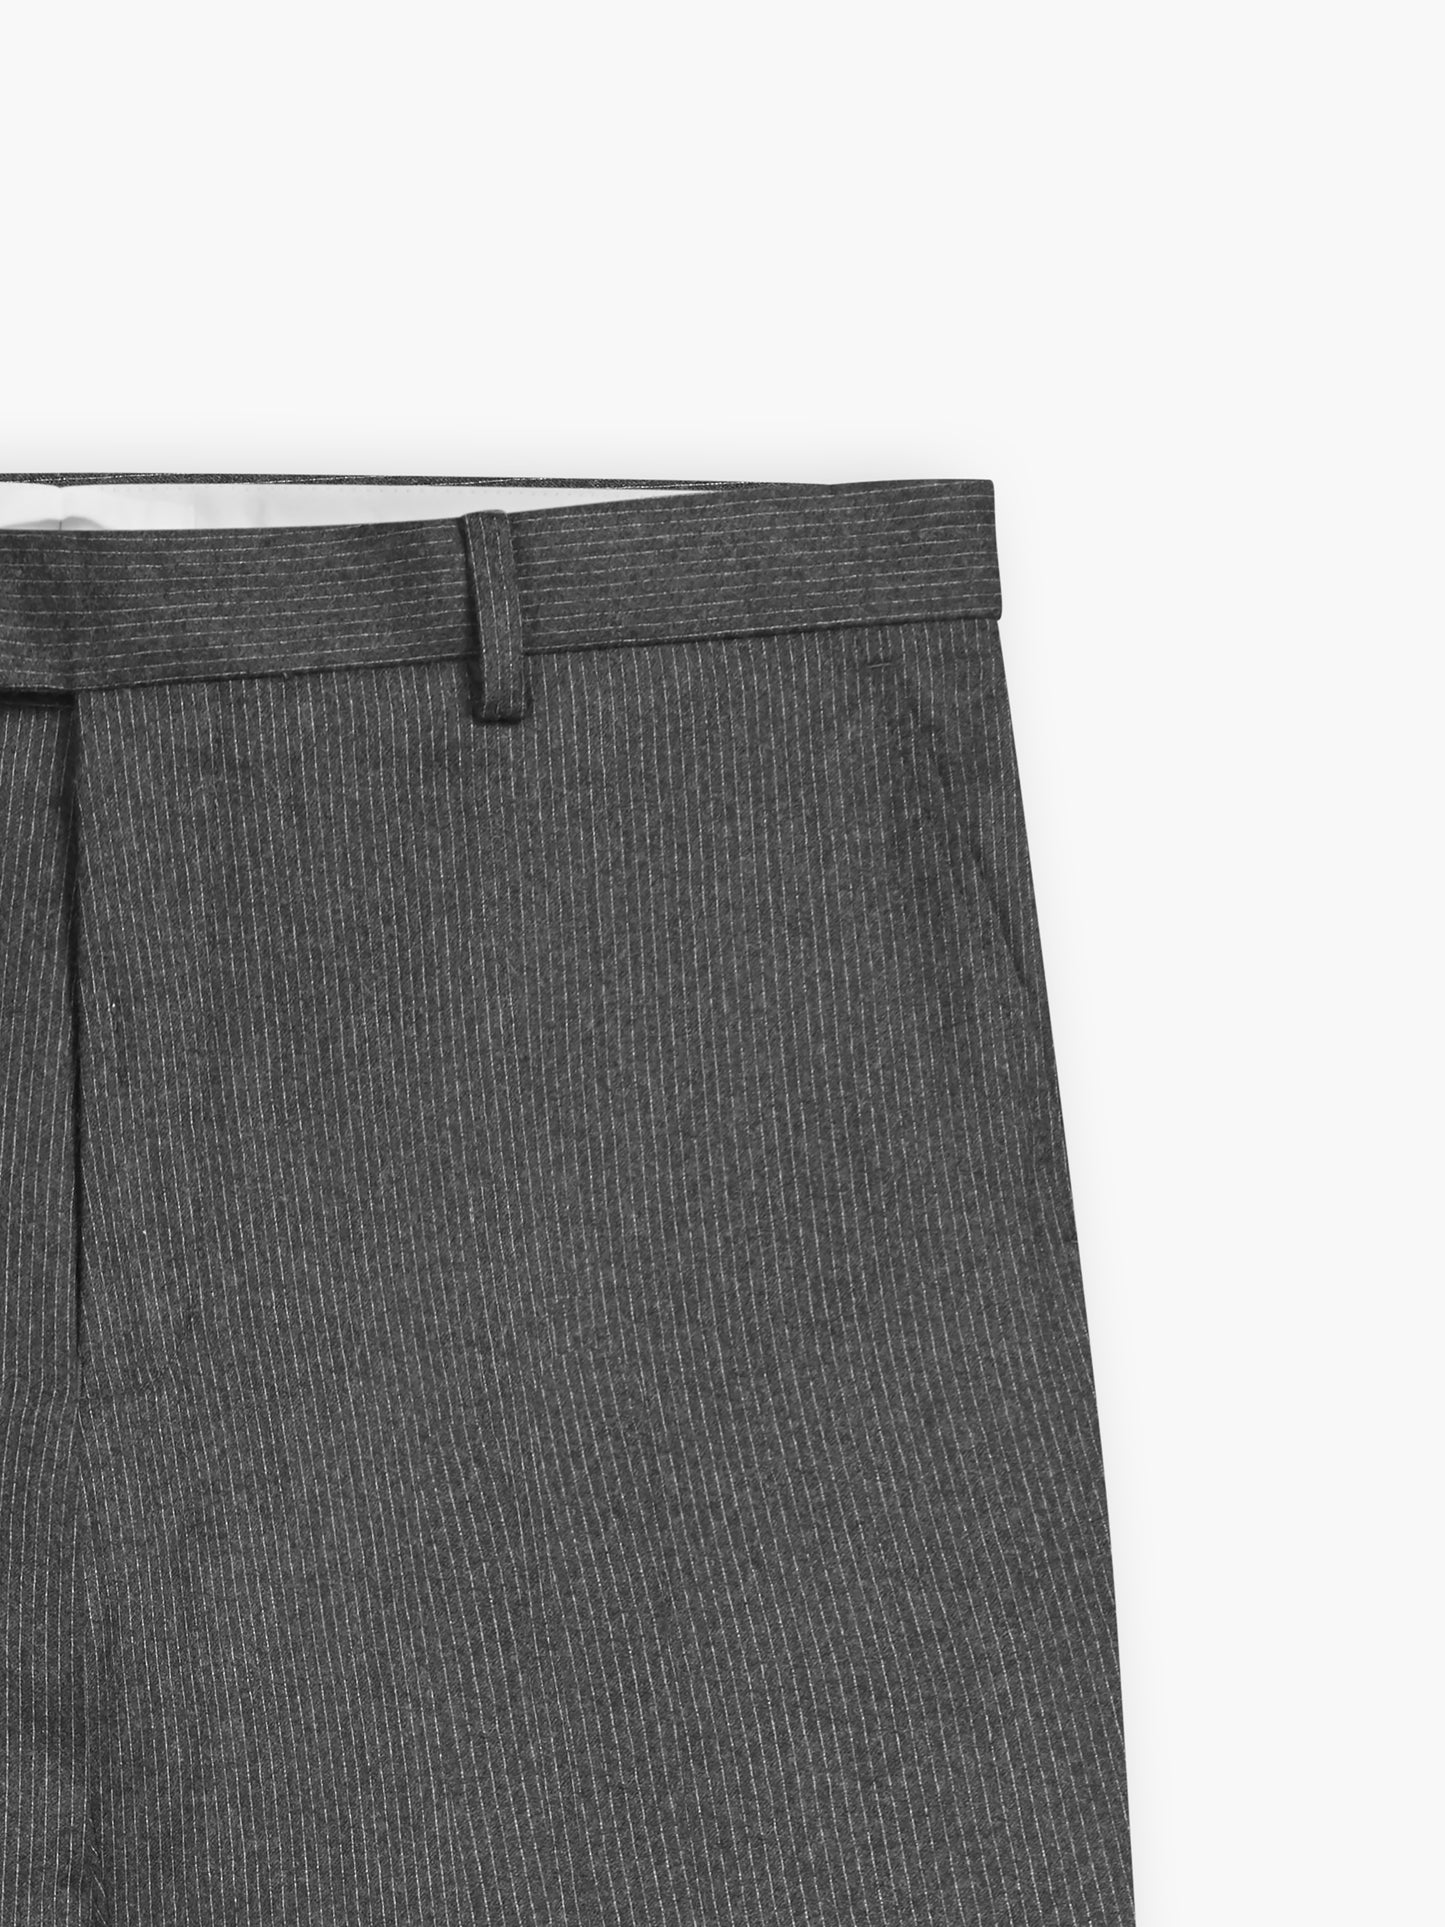 Gainsborough Barberis Slim Fit Grey Pinstripe Trousers